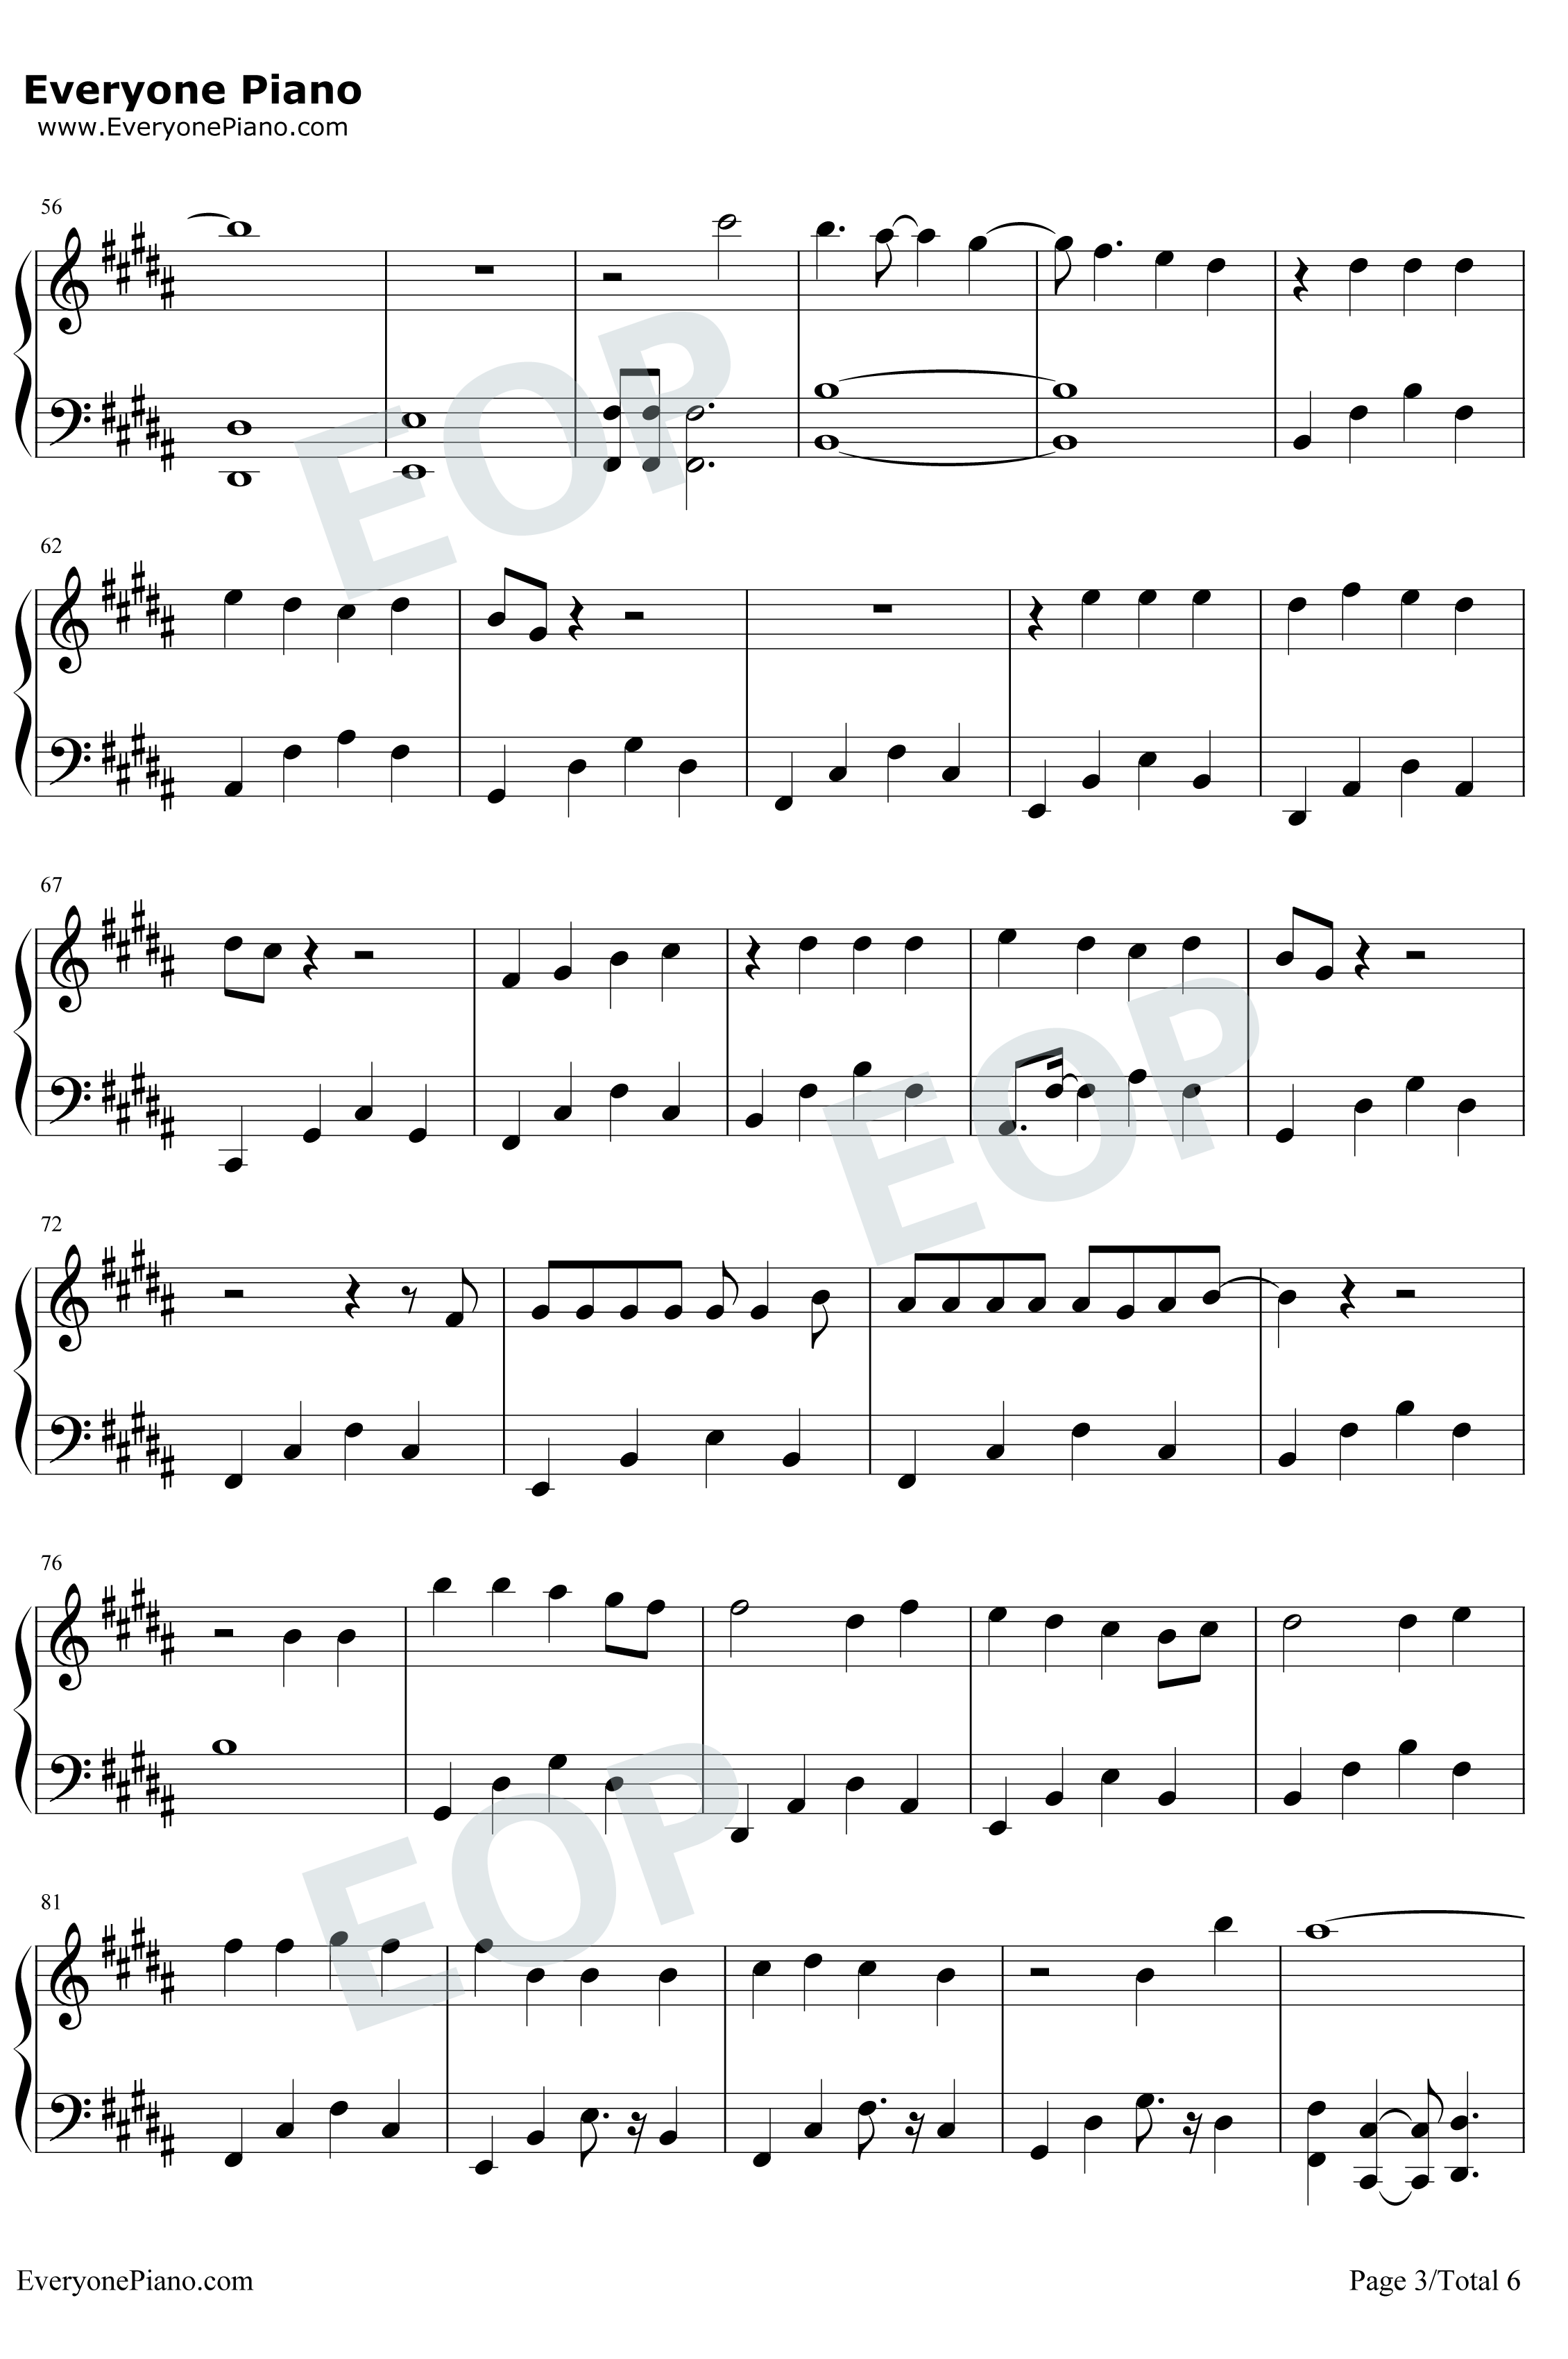 ジコチュー乃版本46钢琴谱-乃木坂463